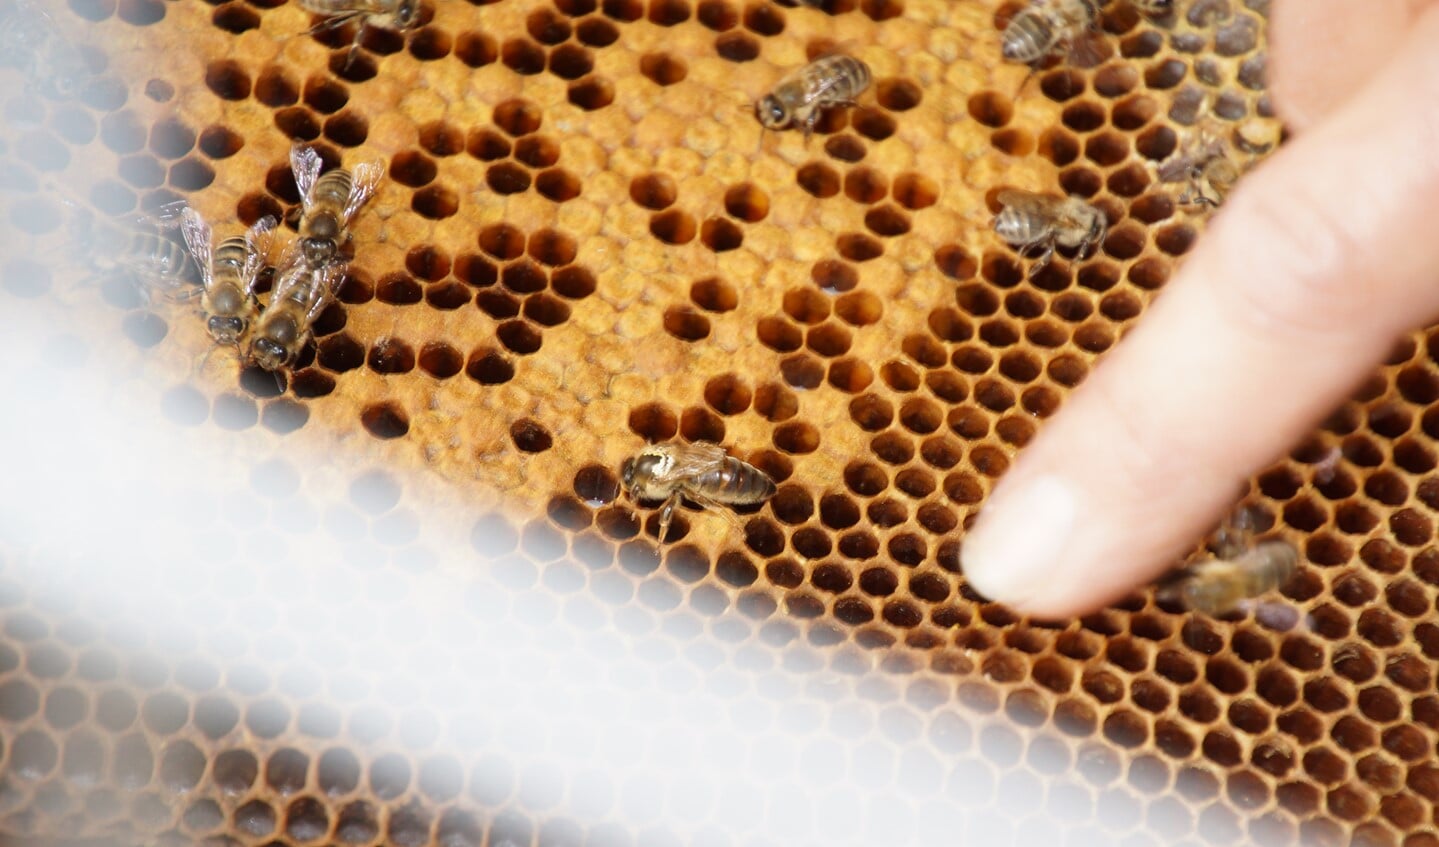 Bij de vinger: de koningin van het bijenvolk. Foto: Frank Vinkenvleugel